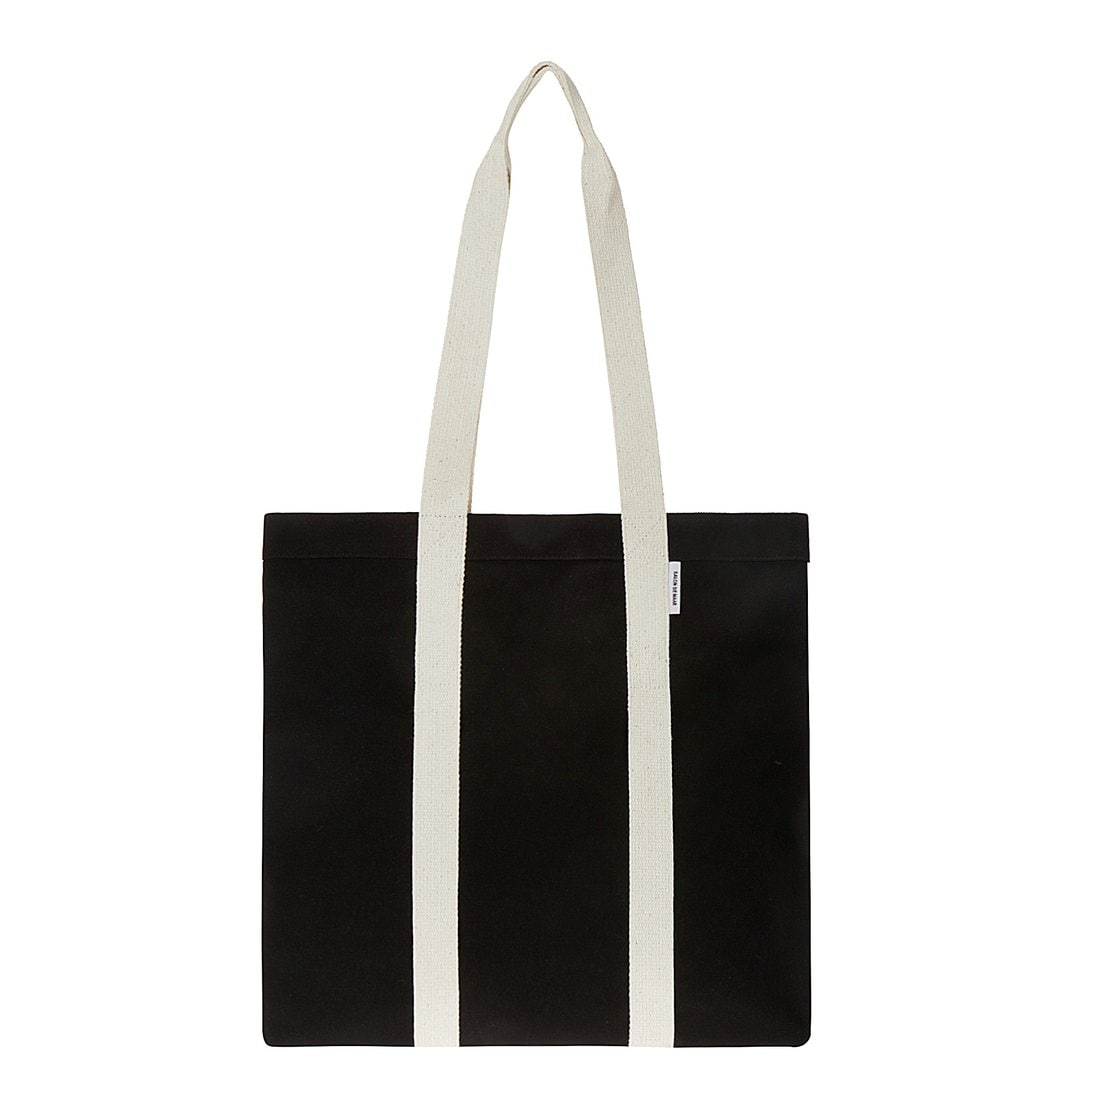 캐리백 블랙 & 베이지(Carry Bag Black & Beige), 신세계적 쇼핑포털 Ssg.Com